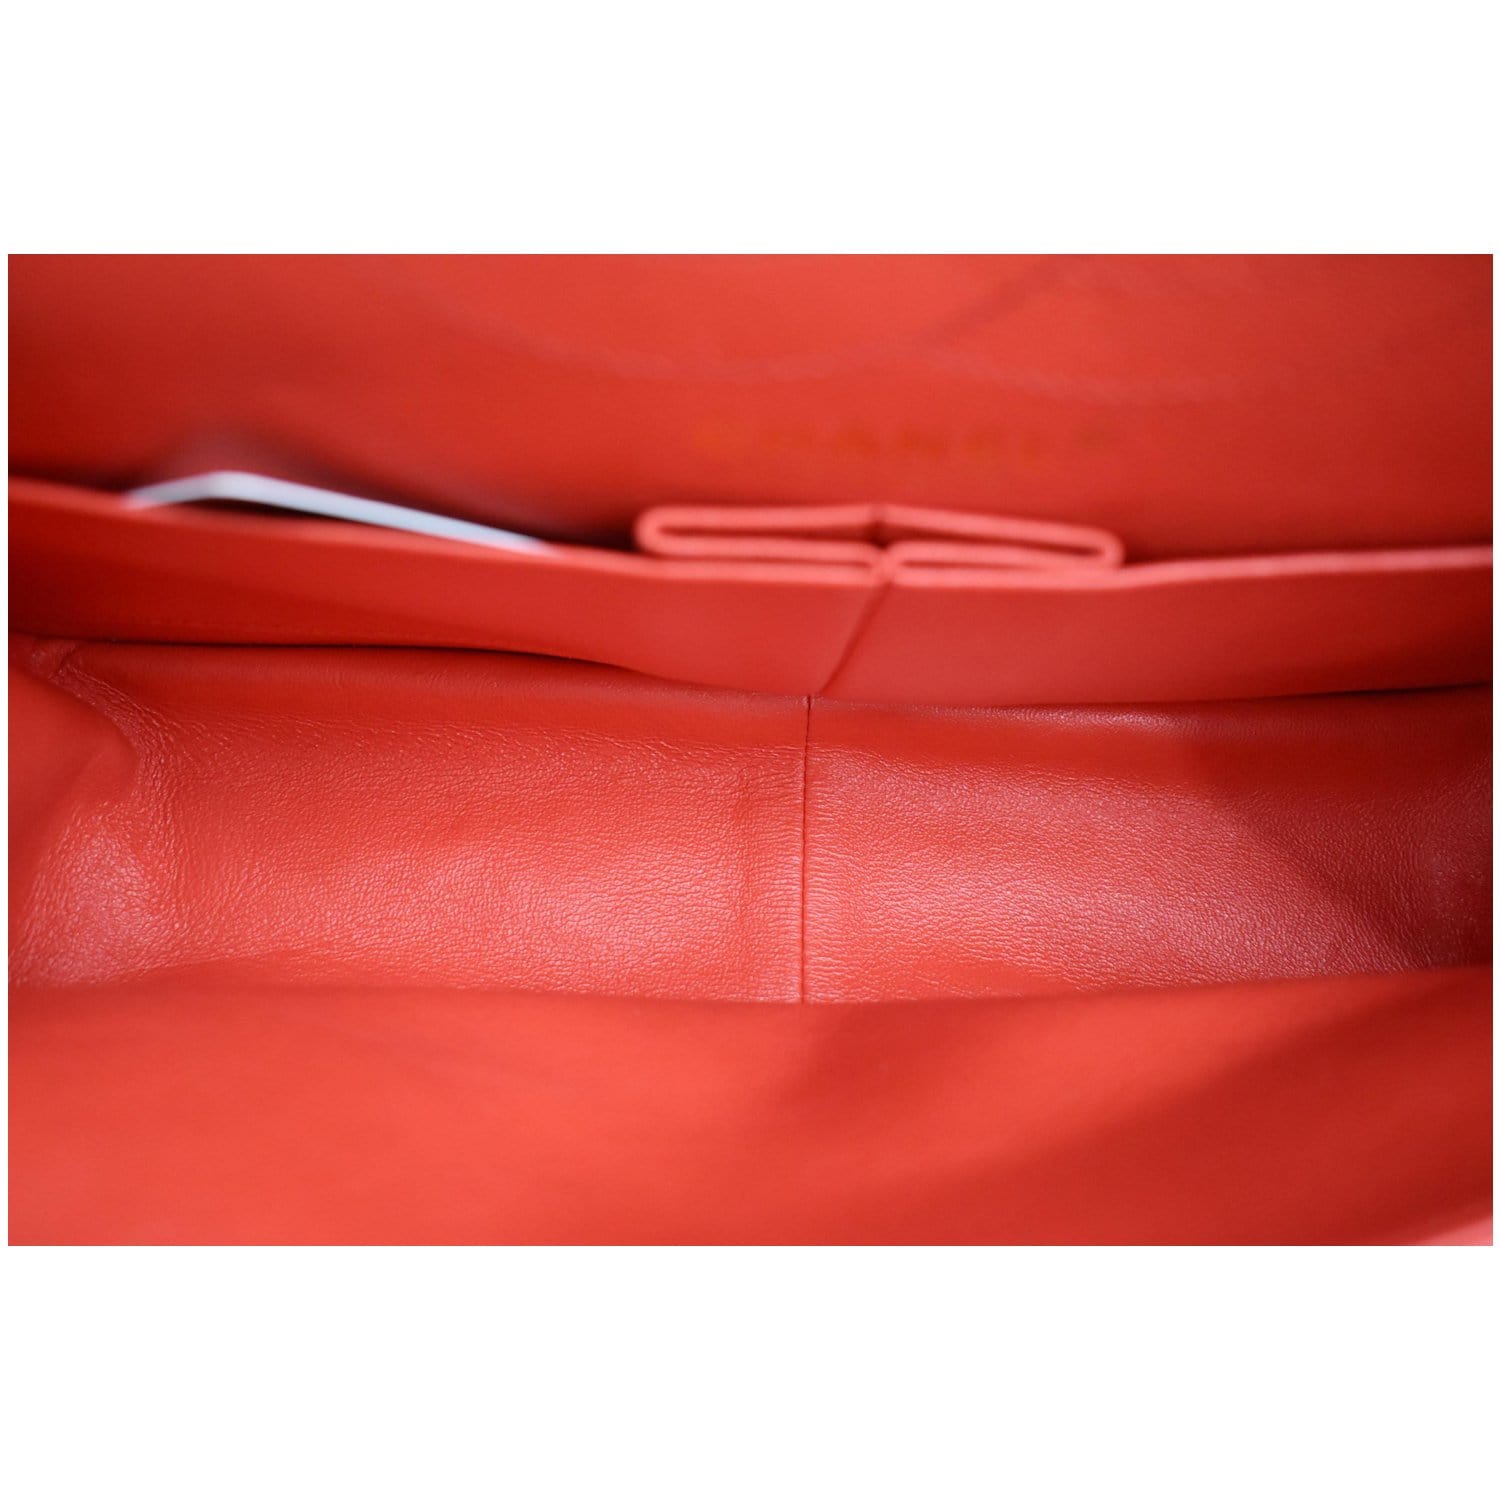 CHANEL 2.55 Reissue Double Flap Chevron Leather Shoulder Bag